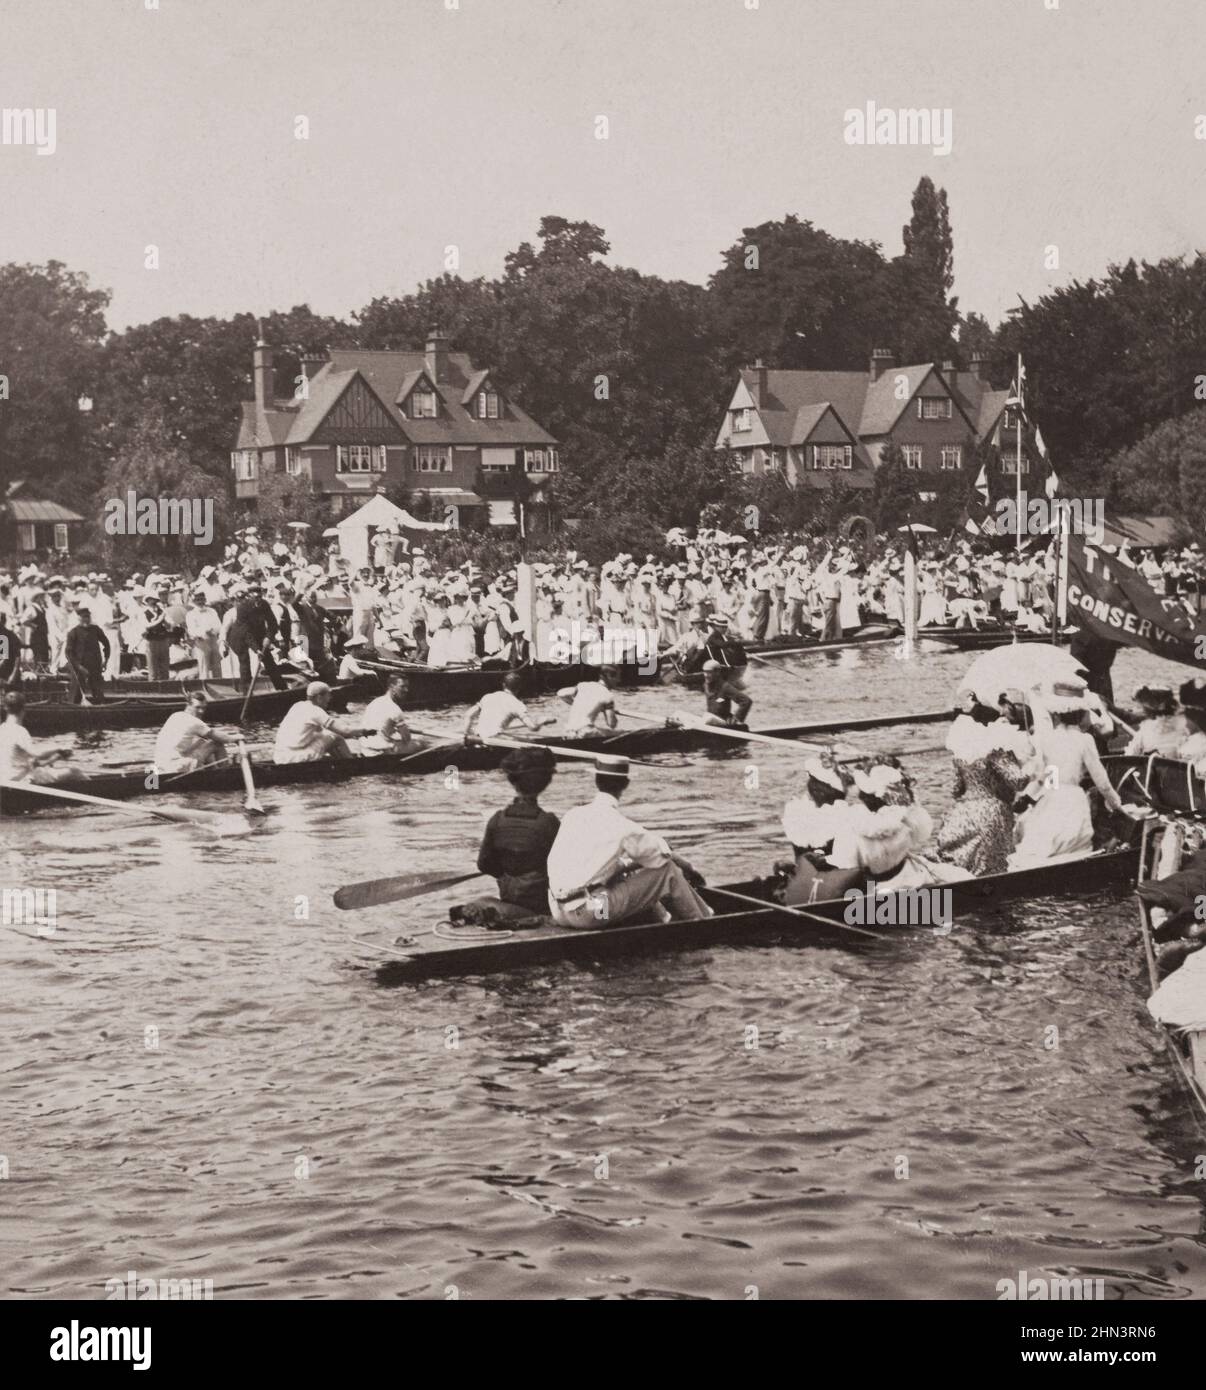 Foto d'epoca del Leander, vincitore del concorso alla regata di Henley sul Tamigi, Inghilterra. 1902 Foto Stock